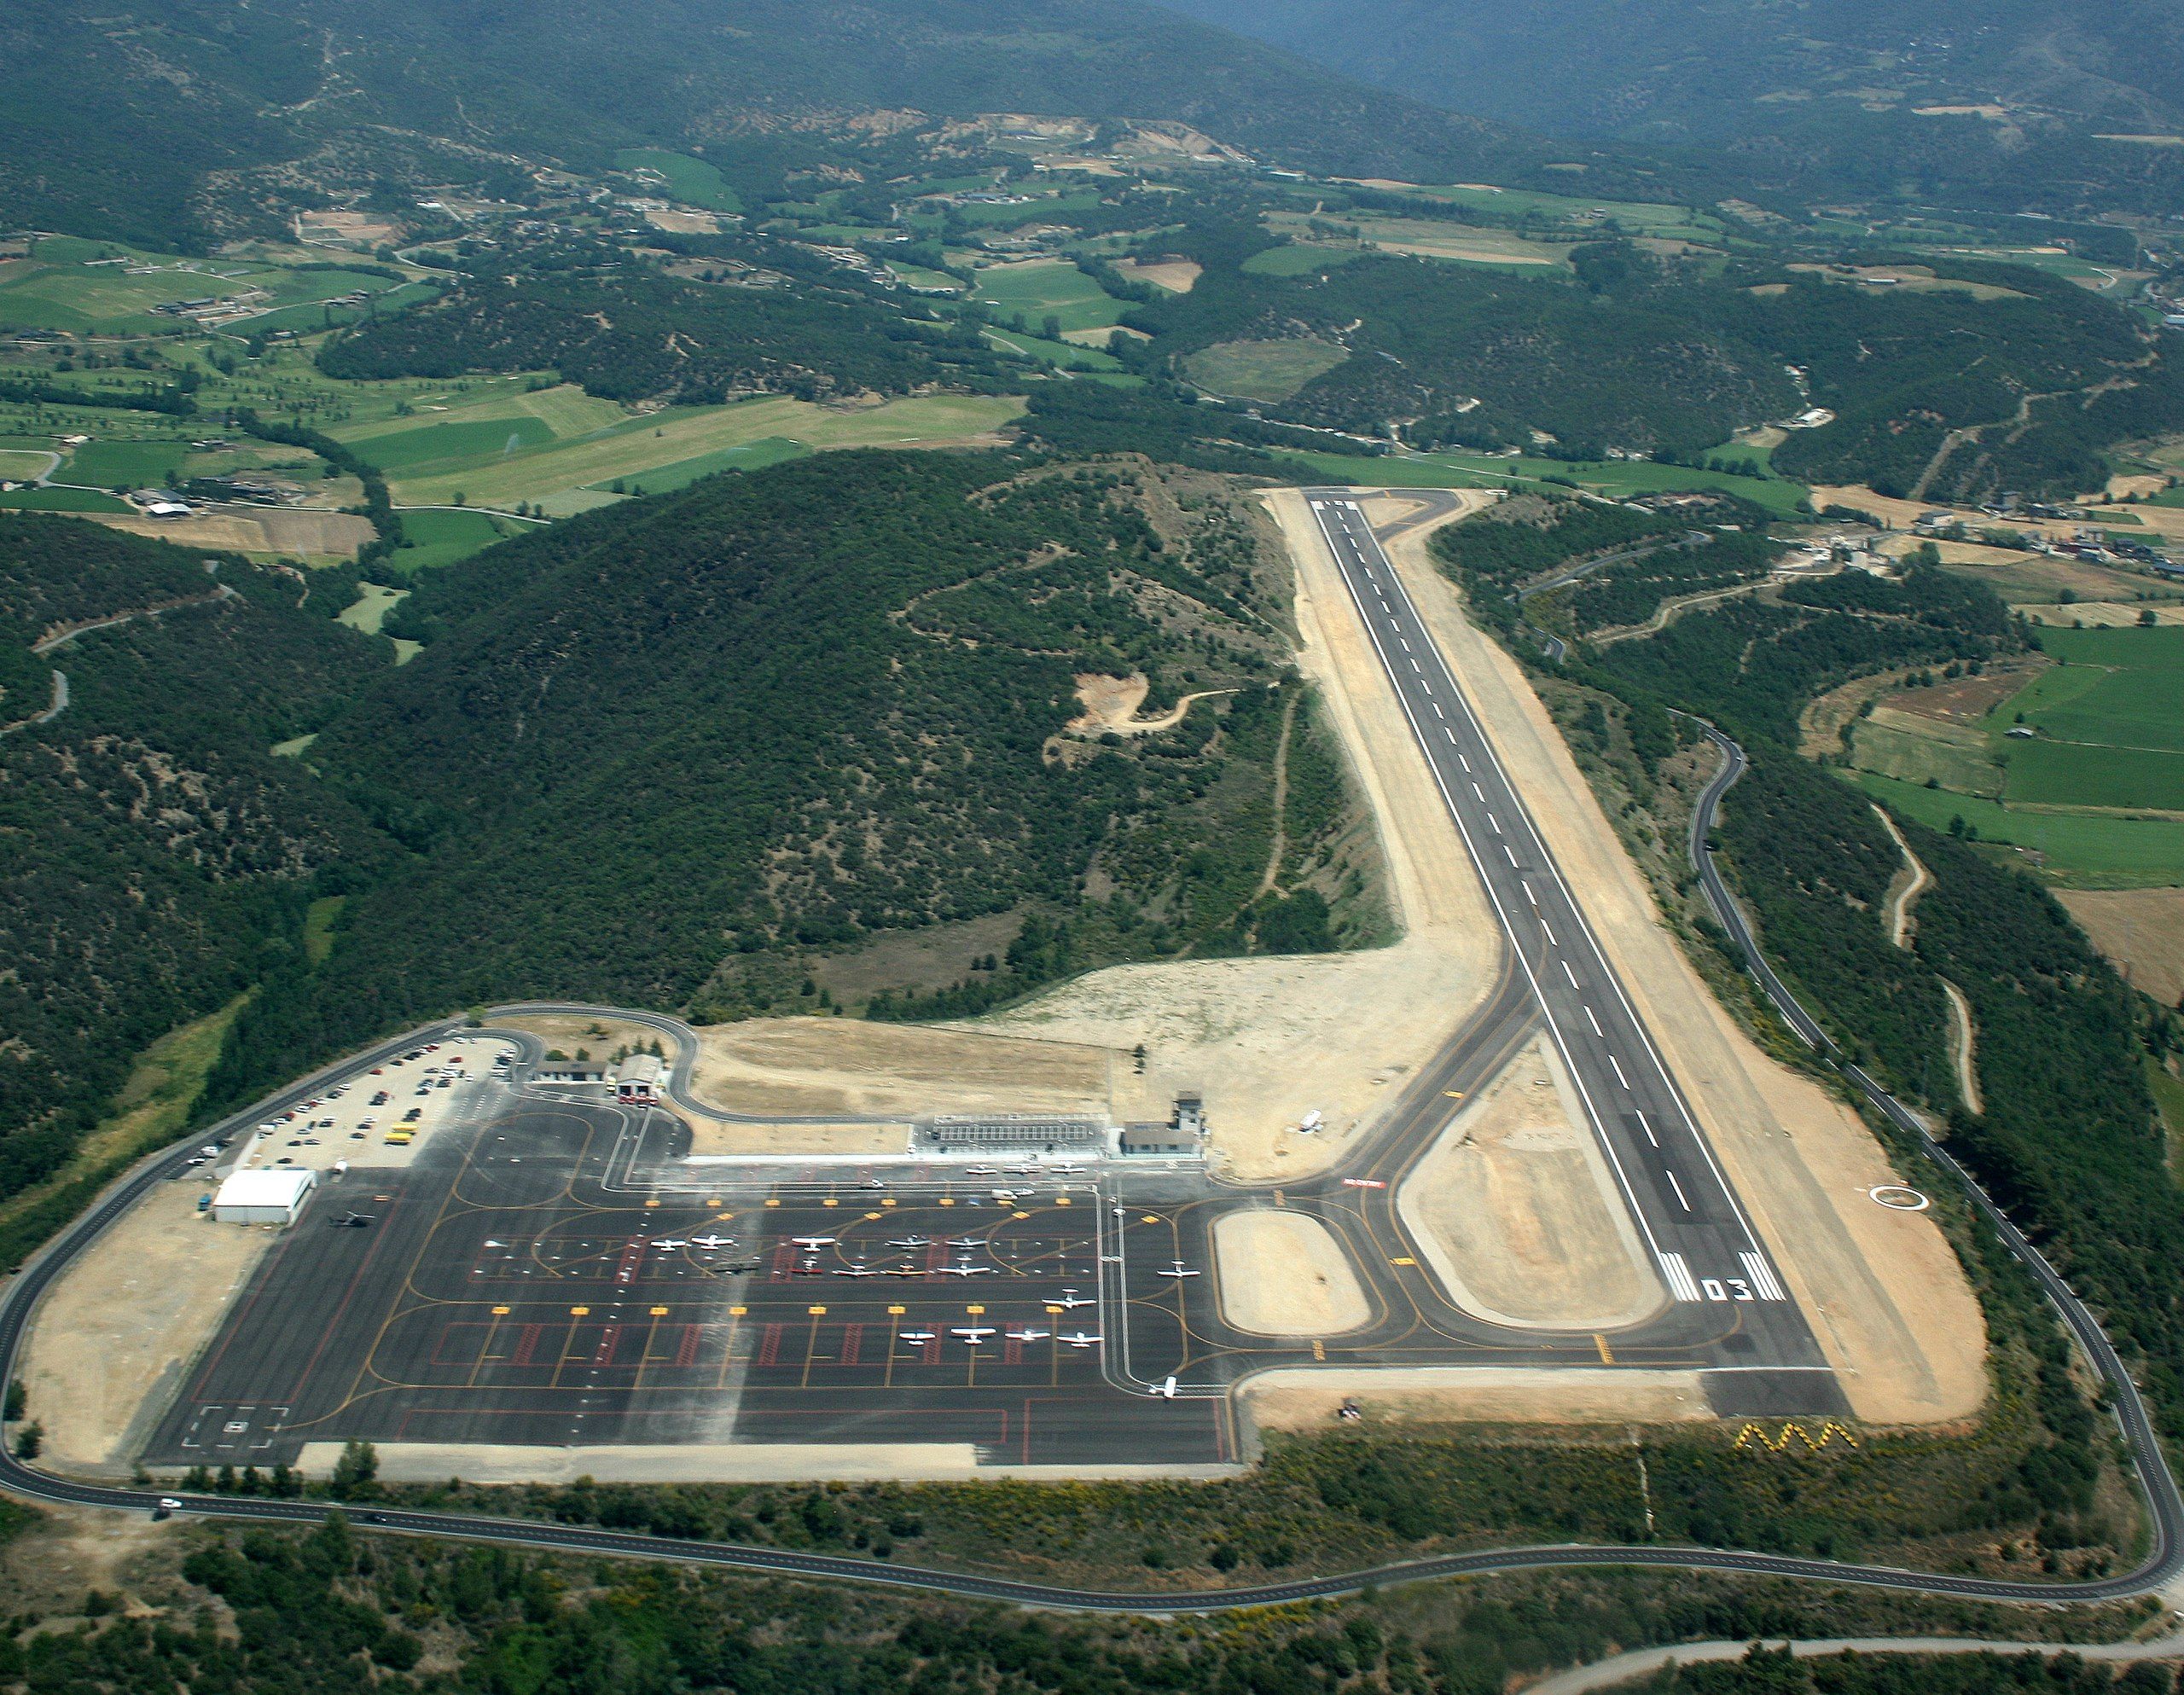 Aerial view of Andorra–La Seu d'Urgell Airport.